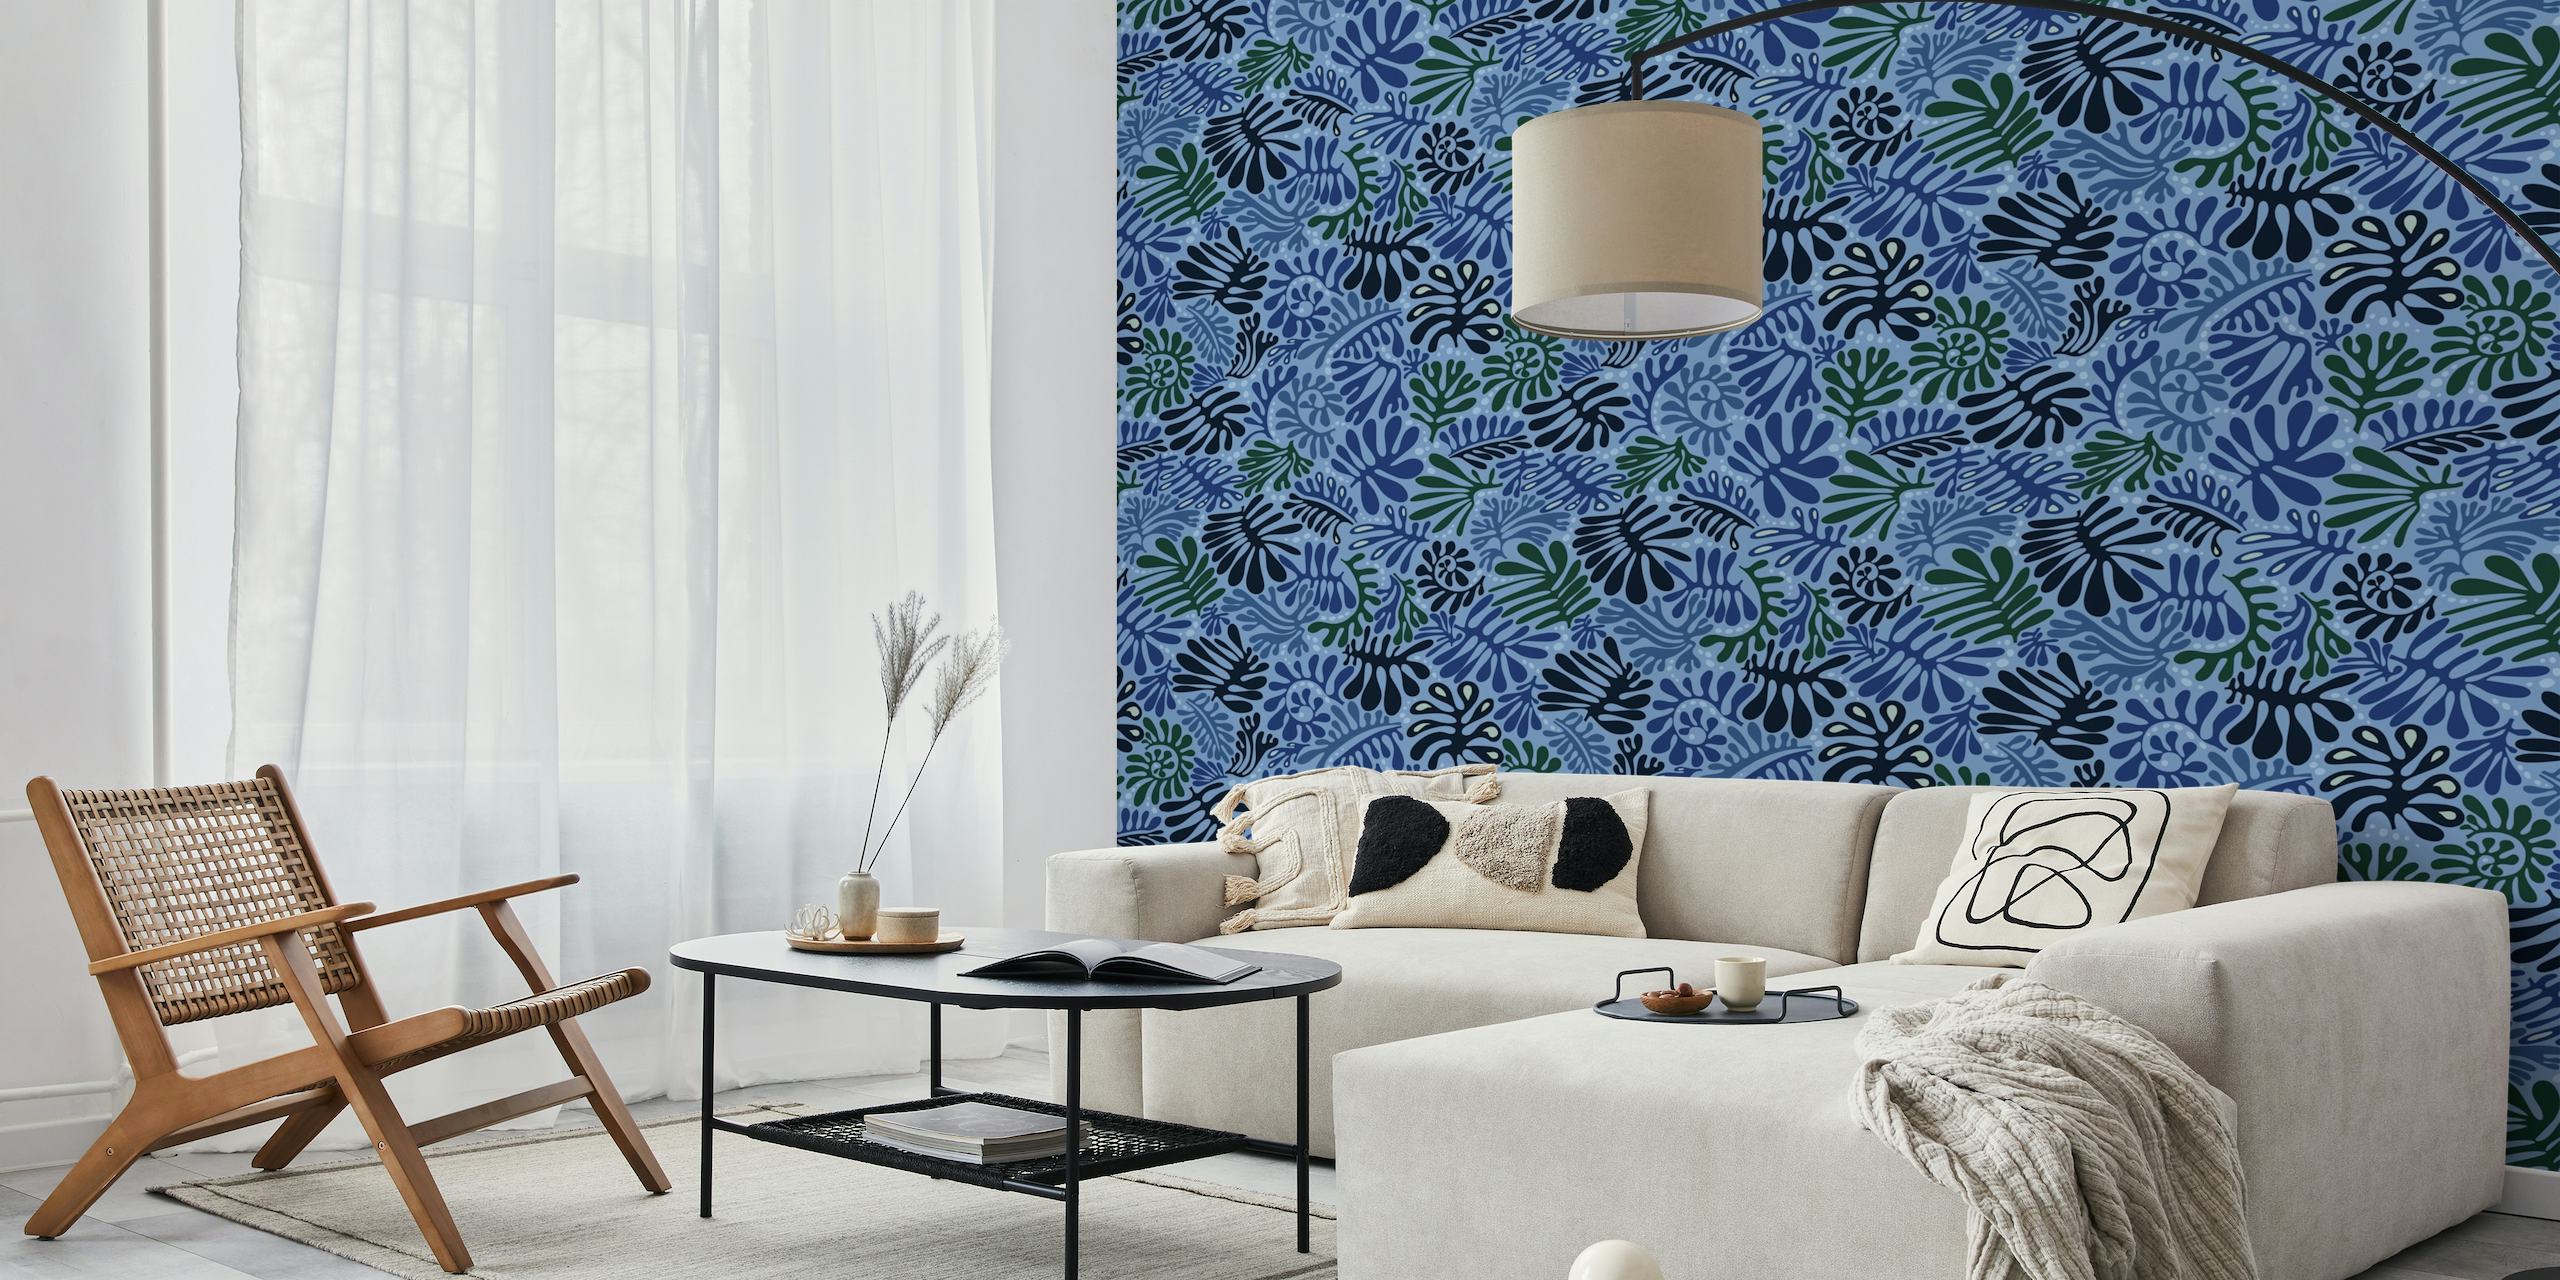 Stilvolles blaues Wandgemälde mit Blattmuster von happywall.com mit verschiedenen Blautönen und Pflanzenausschnitt-Designs.